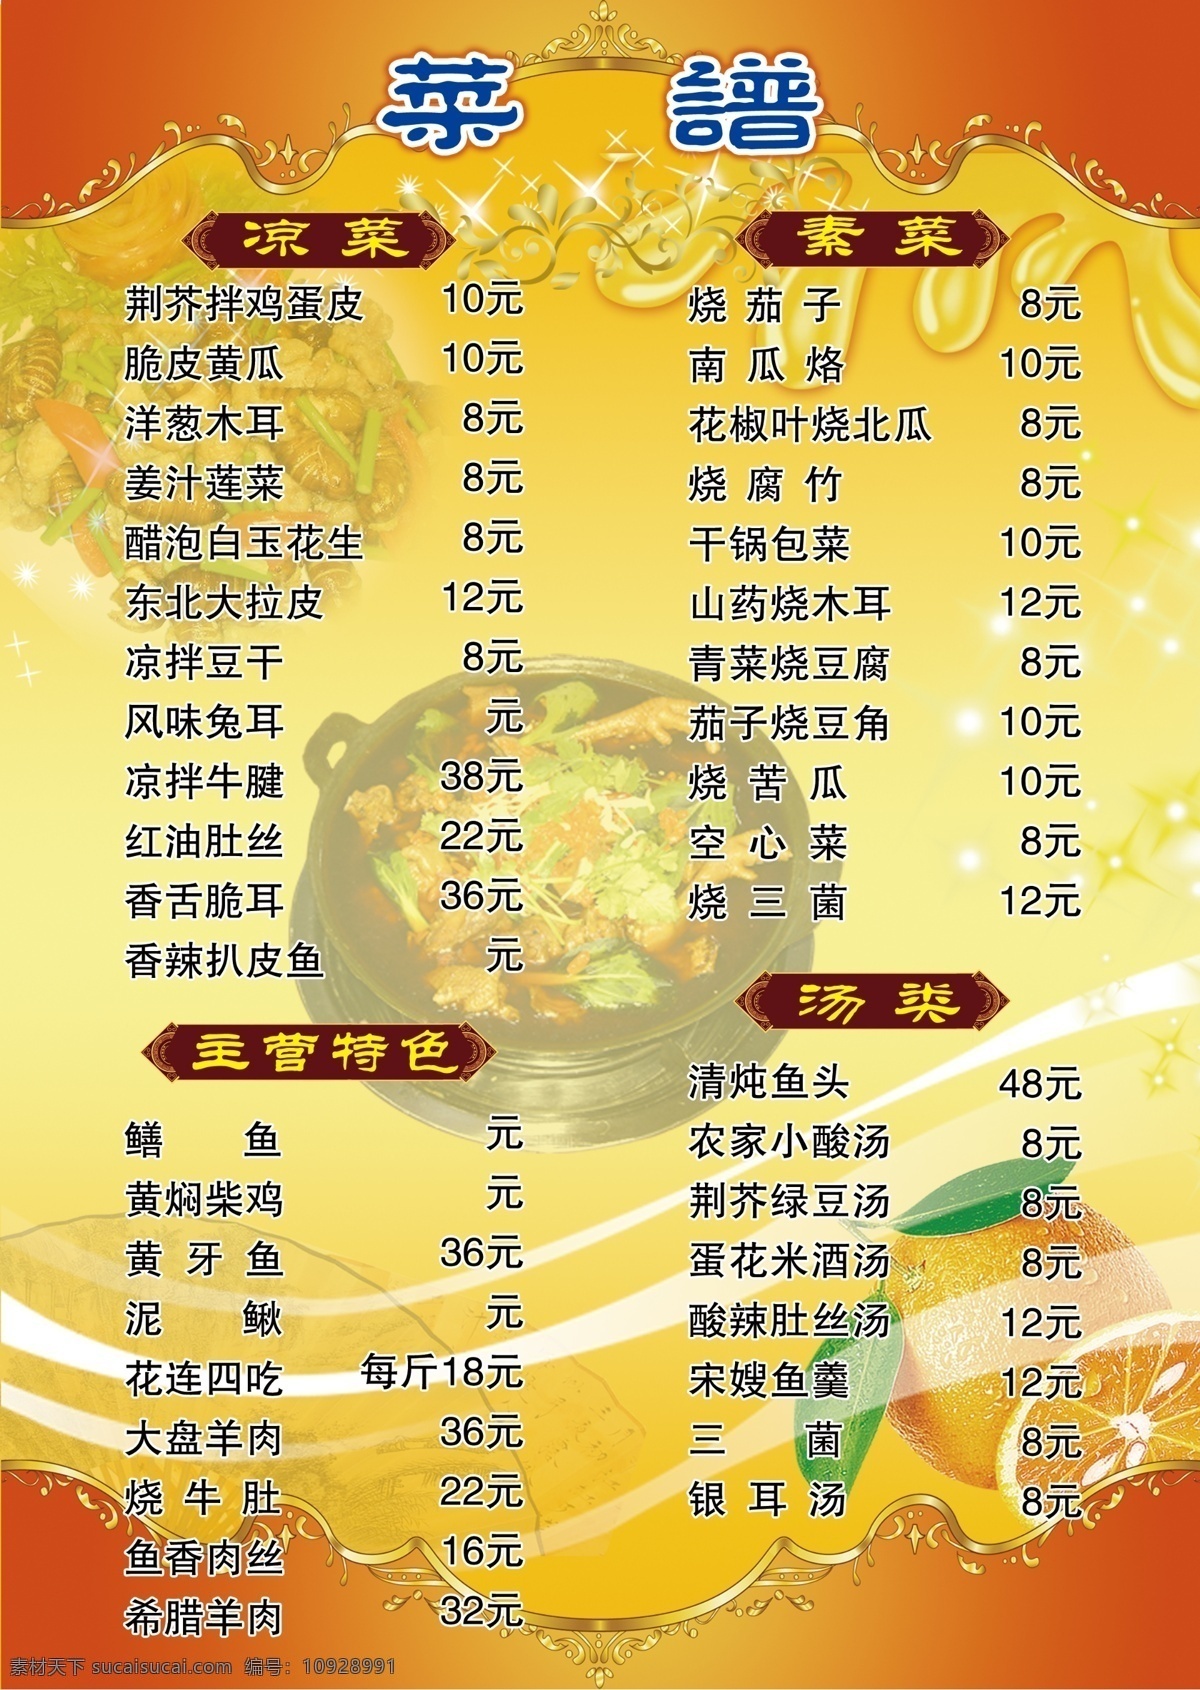 菜谱 凉菜 素菜 特色菜 汤类 铁锅鸡 菜单菜谱 广告设计模板 源文件